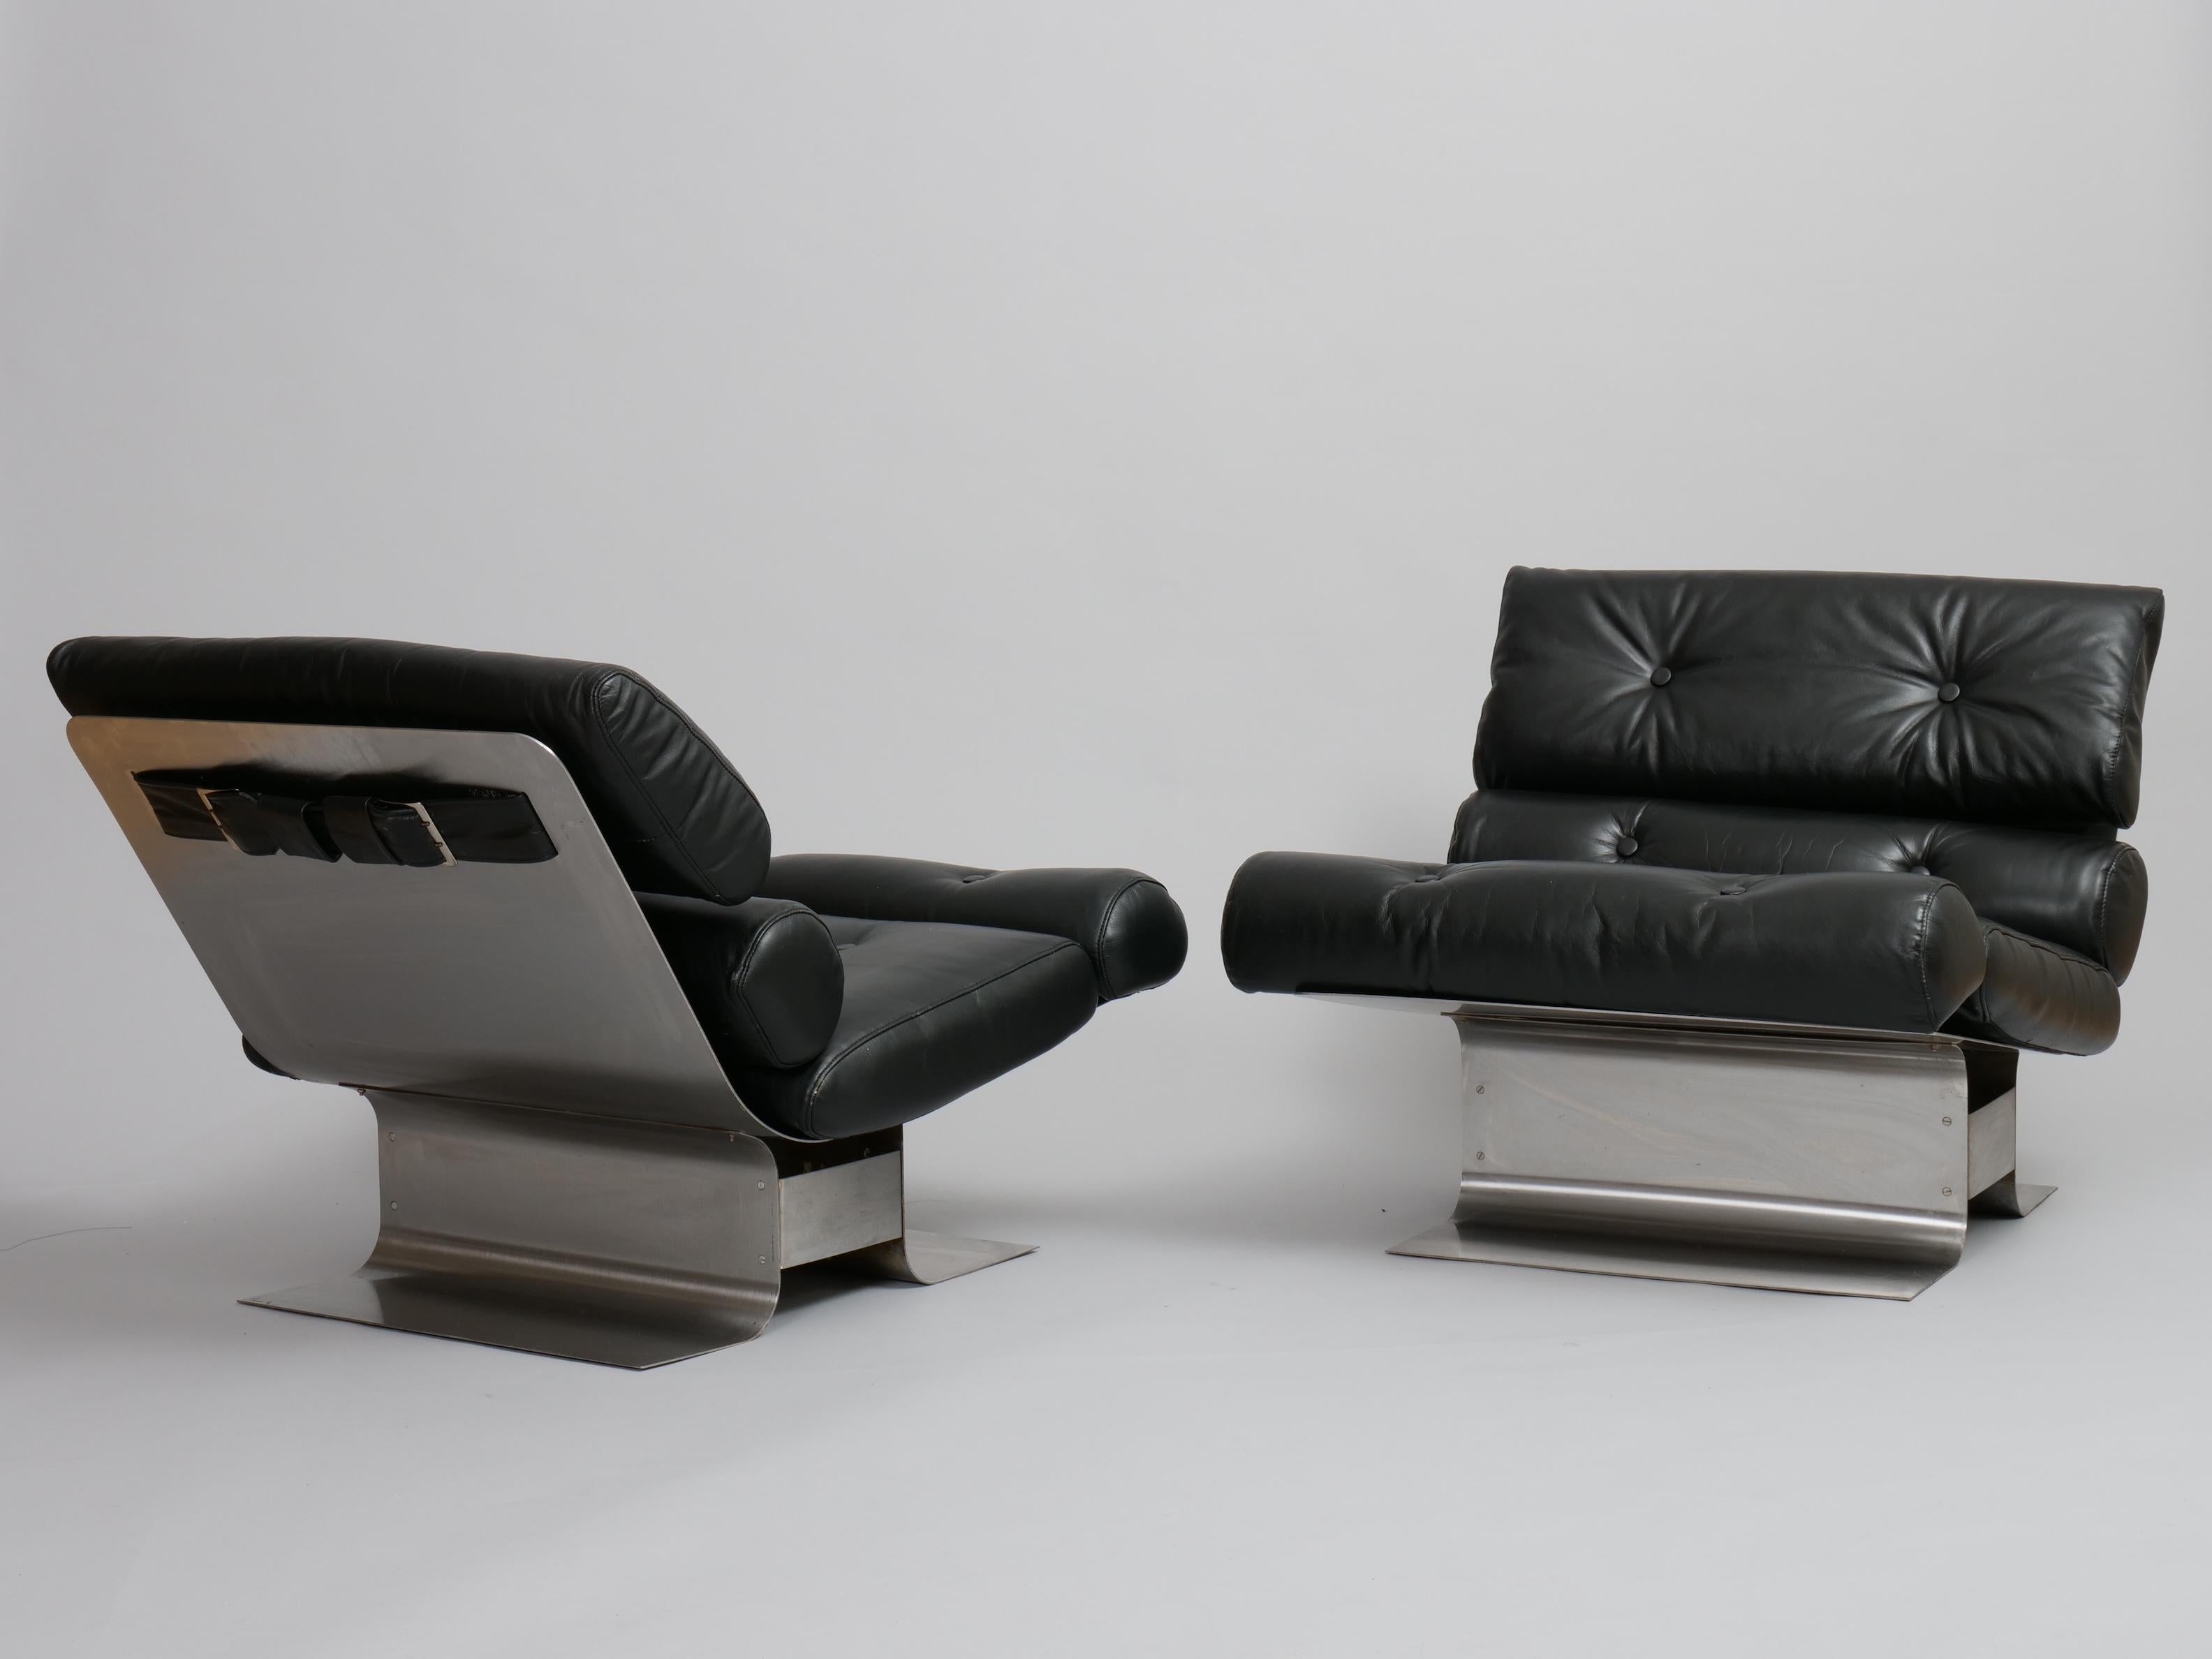 Rare paire de chaises longues conçues par Jean François Monnet et fabriquées par Kappa, France, en 1972.

Très rare à trouver car moins d'une centaine de chaises ont été fabriquées. 

Ils sont dans un état d'origine fantastique. 